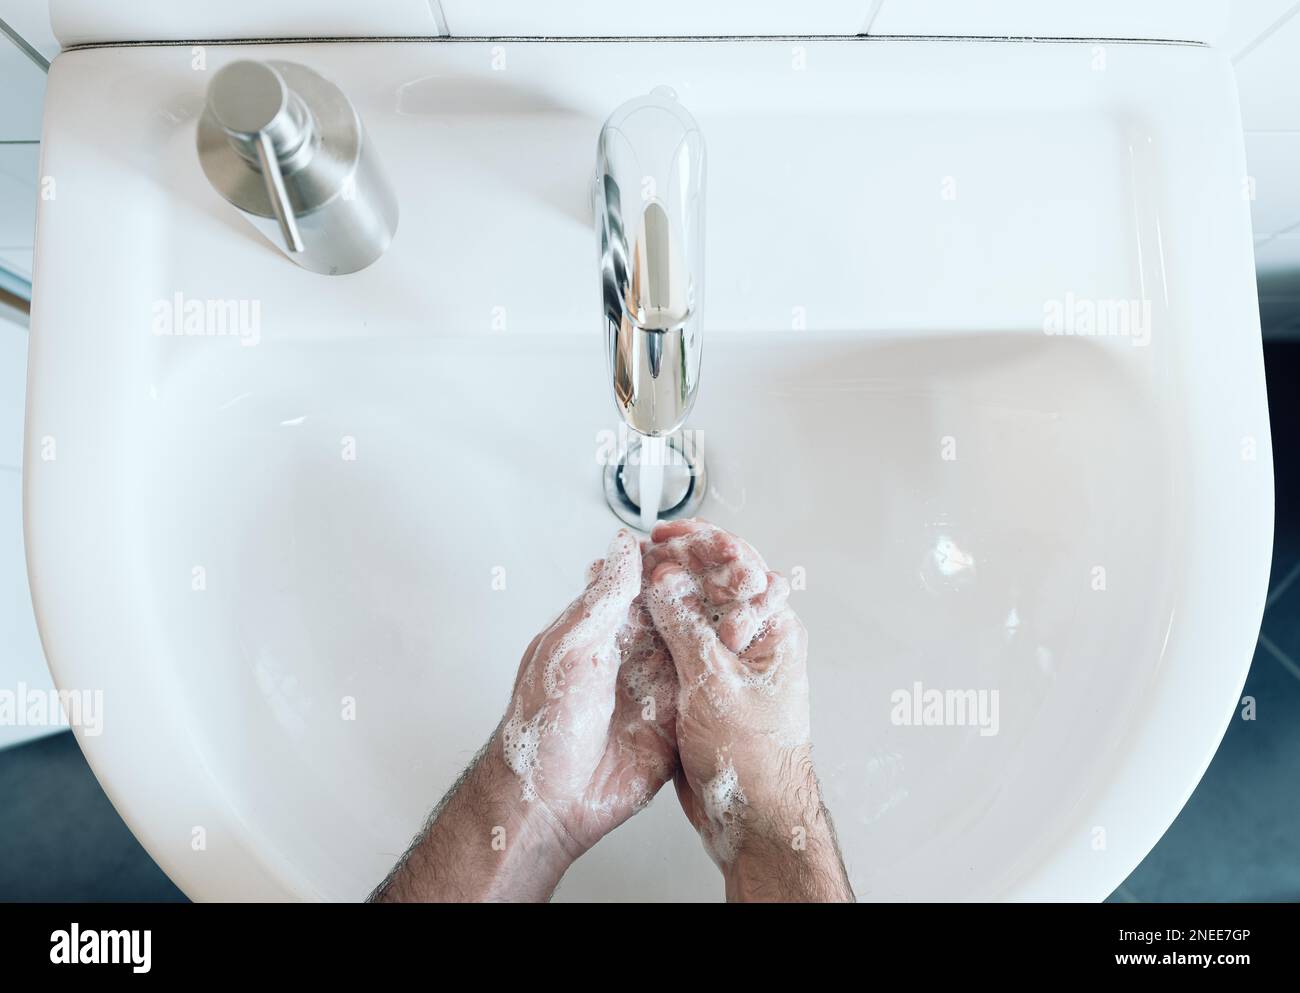 vue de dessus de la personne se laver soigneusement les mains à l'évier de salle de bains avec du savon et de l'eau chaude, mesure d'hygiène pendant la pandémie de covid-19 de coronavirus pour éviter Banque D'Images